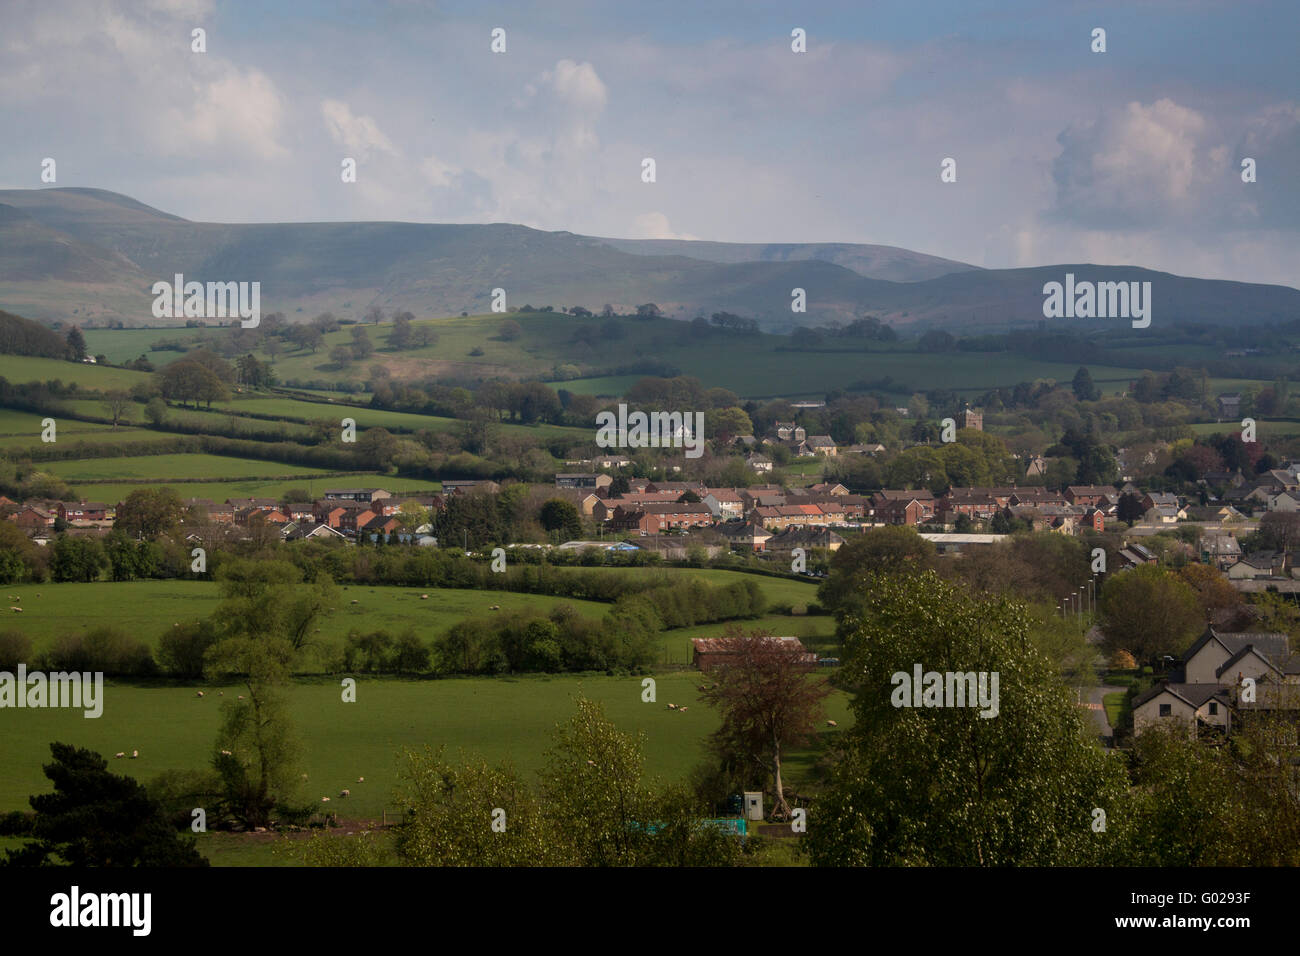 La ville de Talgarth avec les montagnes en arrière-plan noir Parc national de Brecon Beacons Powys Pays de Galles UK Banque D'Images